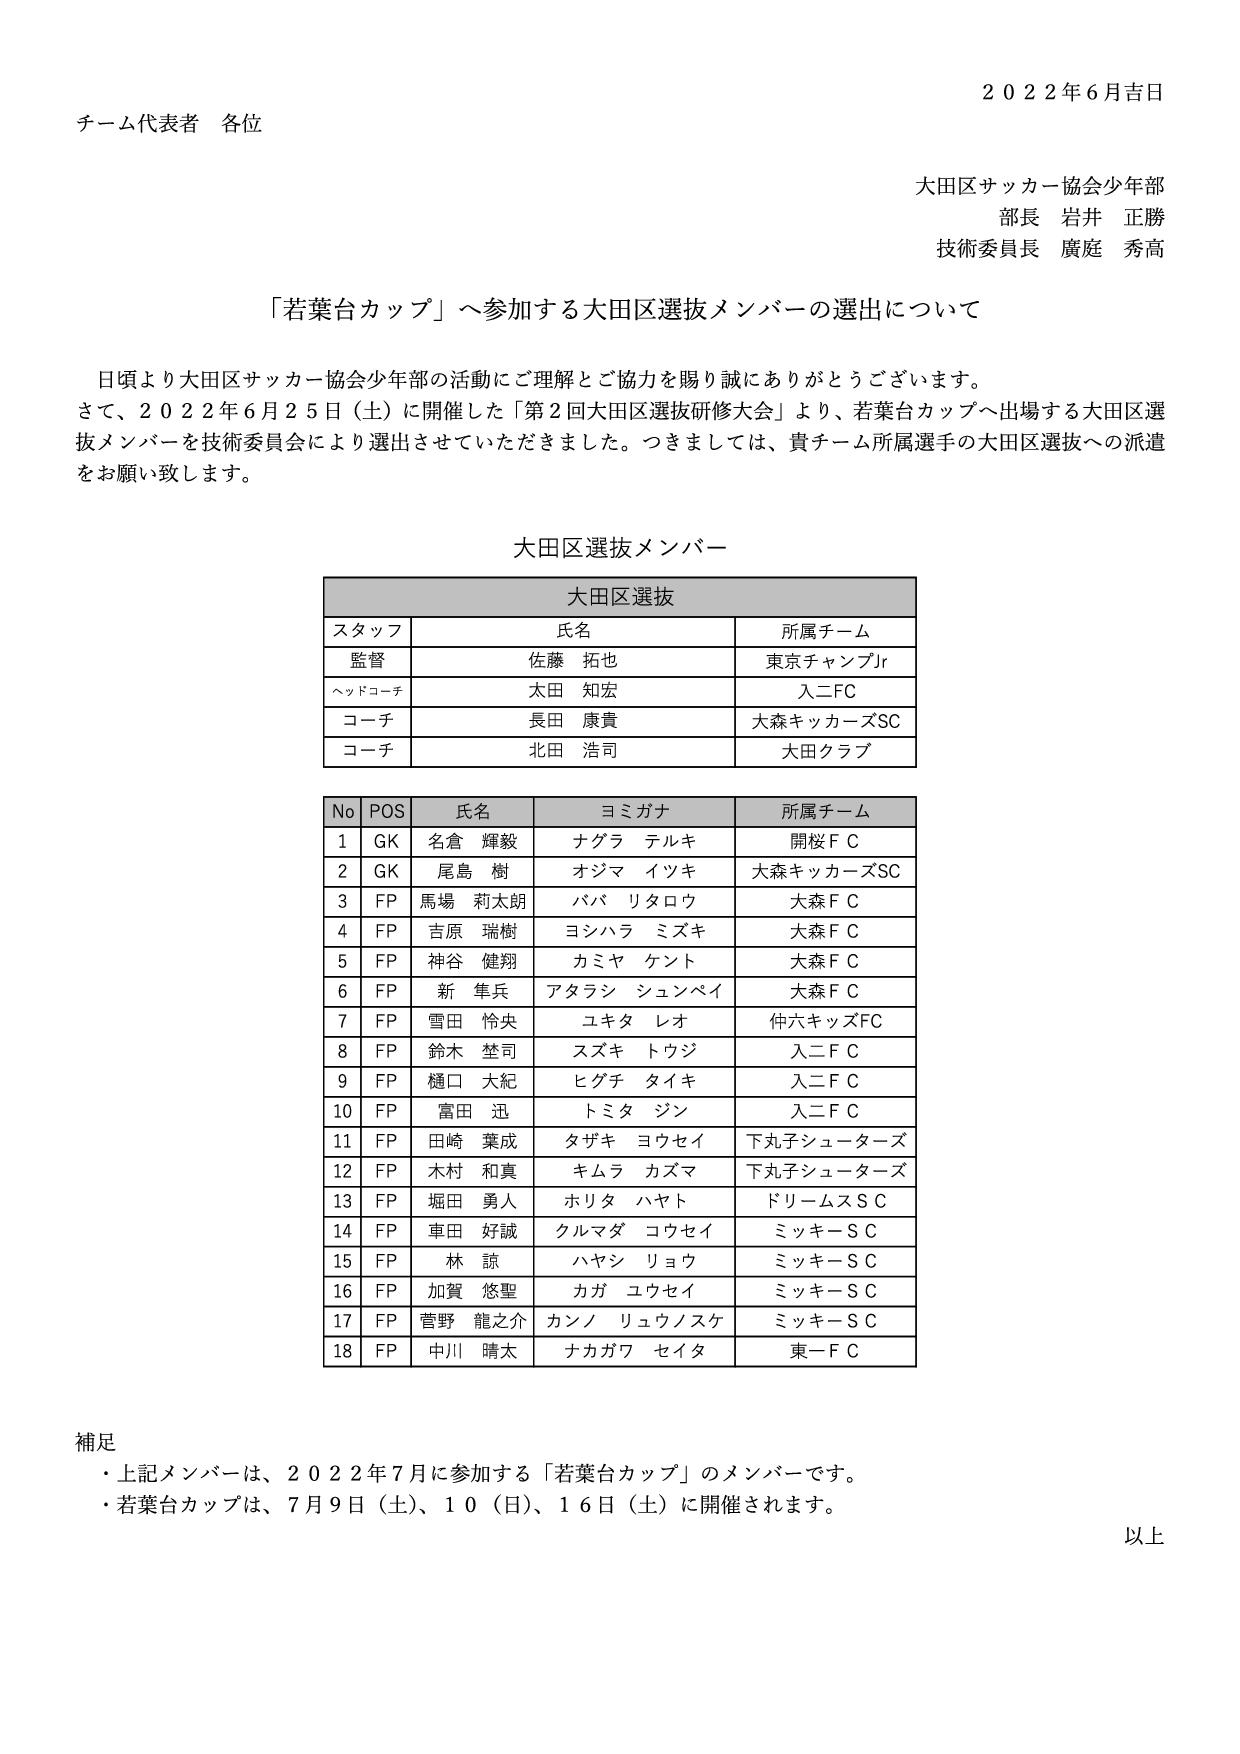 「若葉台カップ」へ参加する大田区選抜メンバーの選出について 